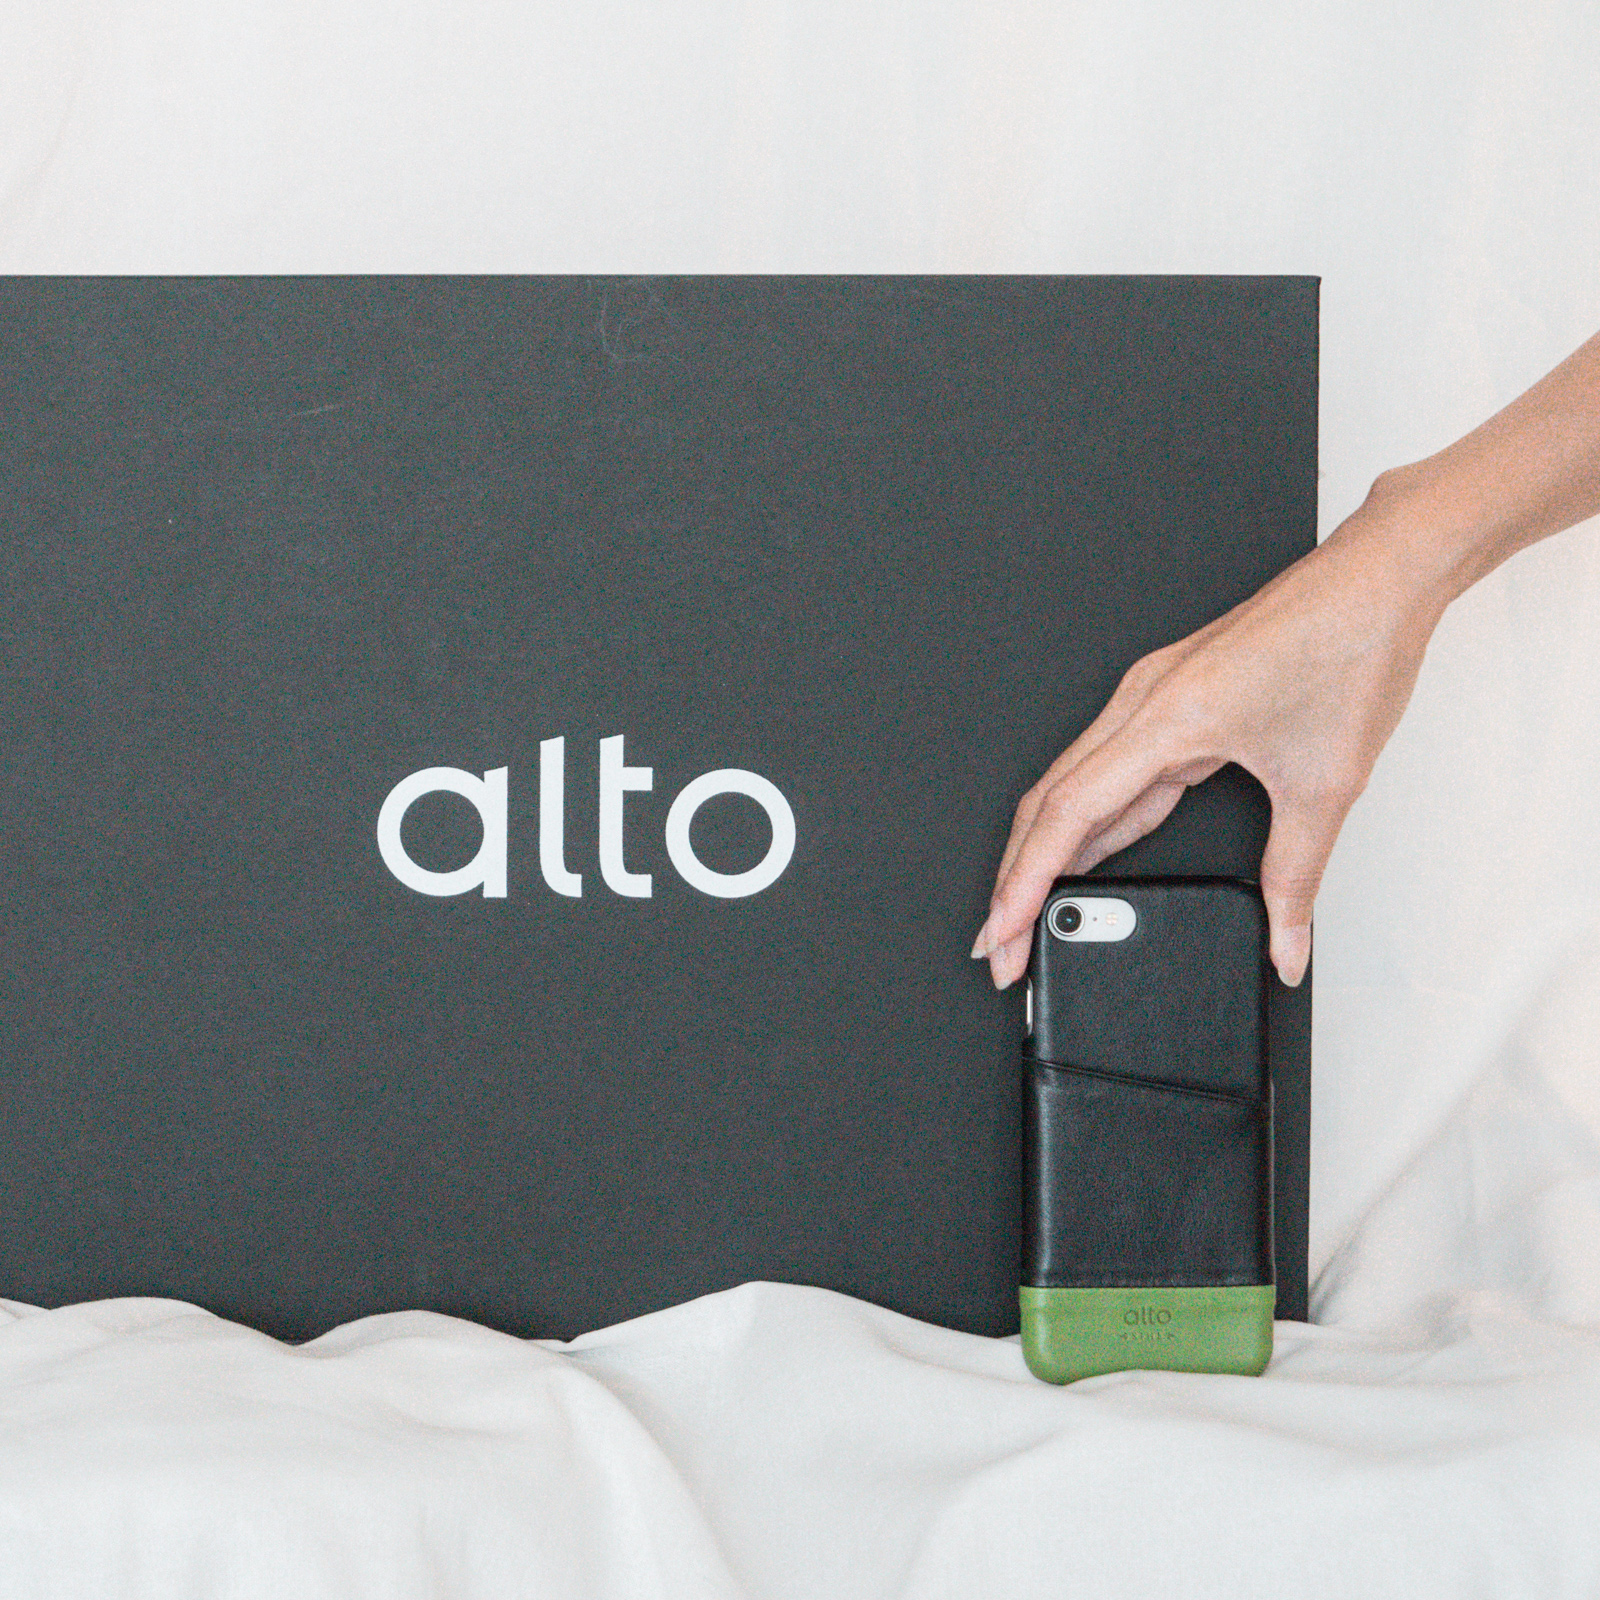 Alto蘋果專屬手機殼配件：科技與工藝的完美平衡，Alto手機殼開箱分享